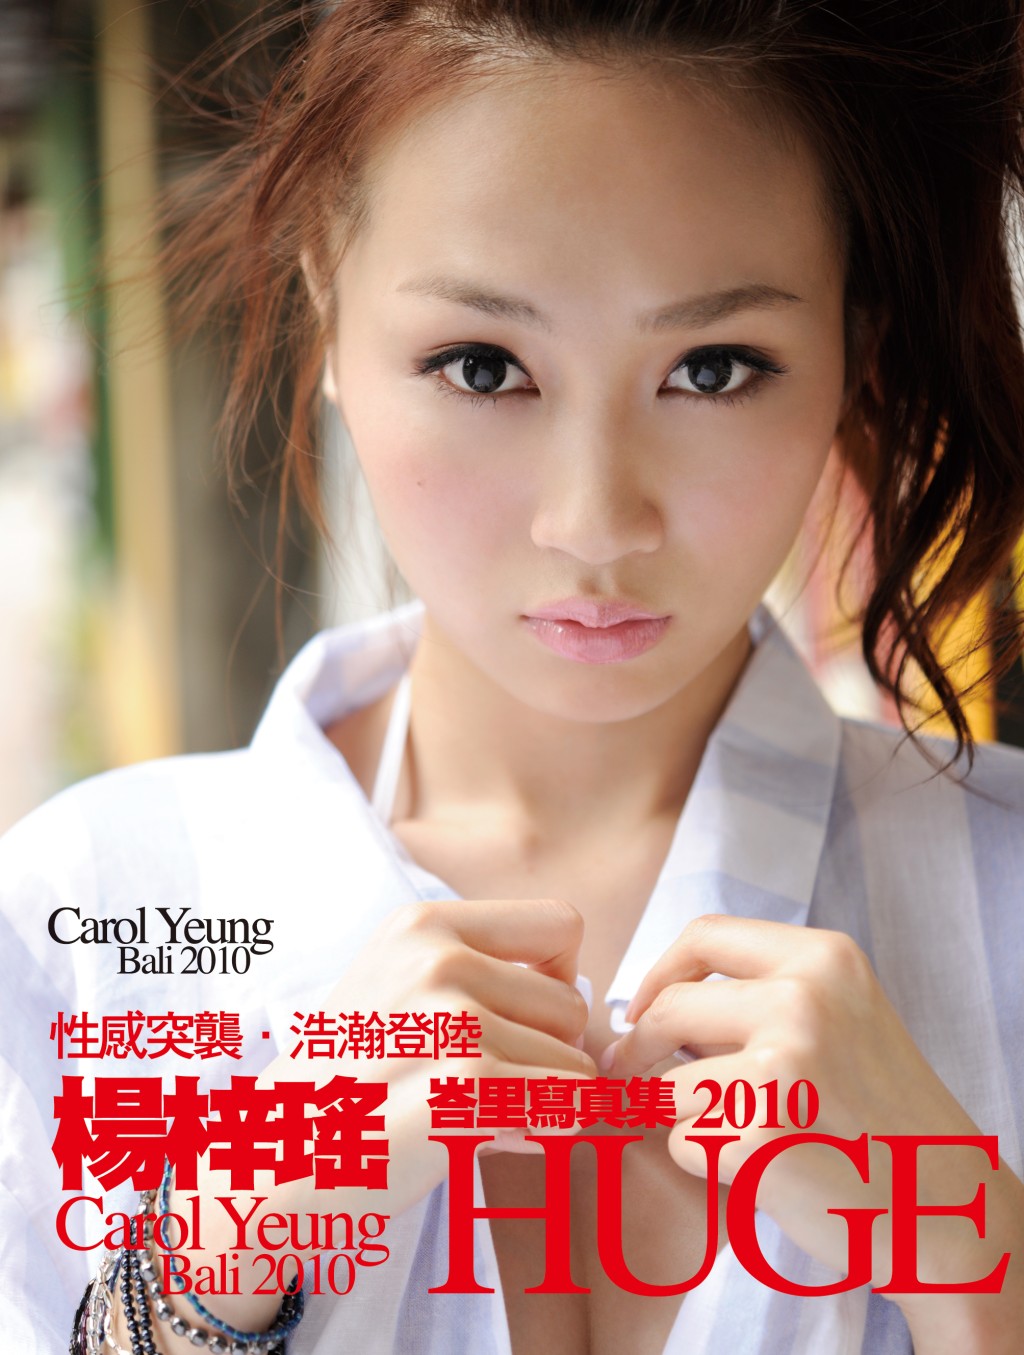 楊焉曾在2010年書展中推出唯一一本寫真集《Huge》。